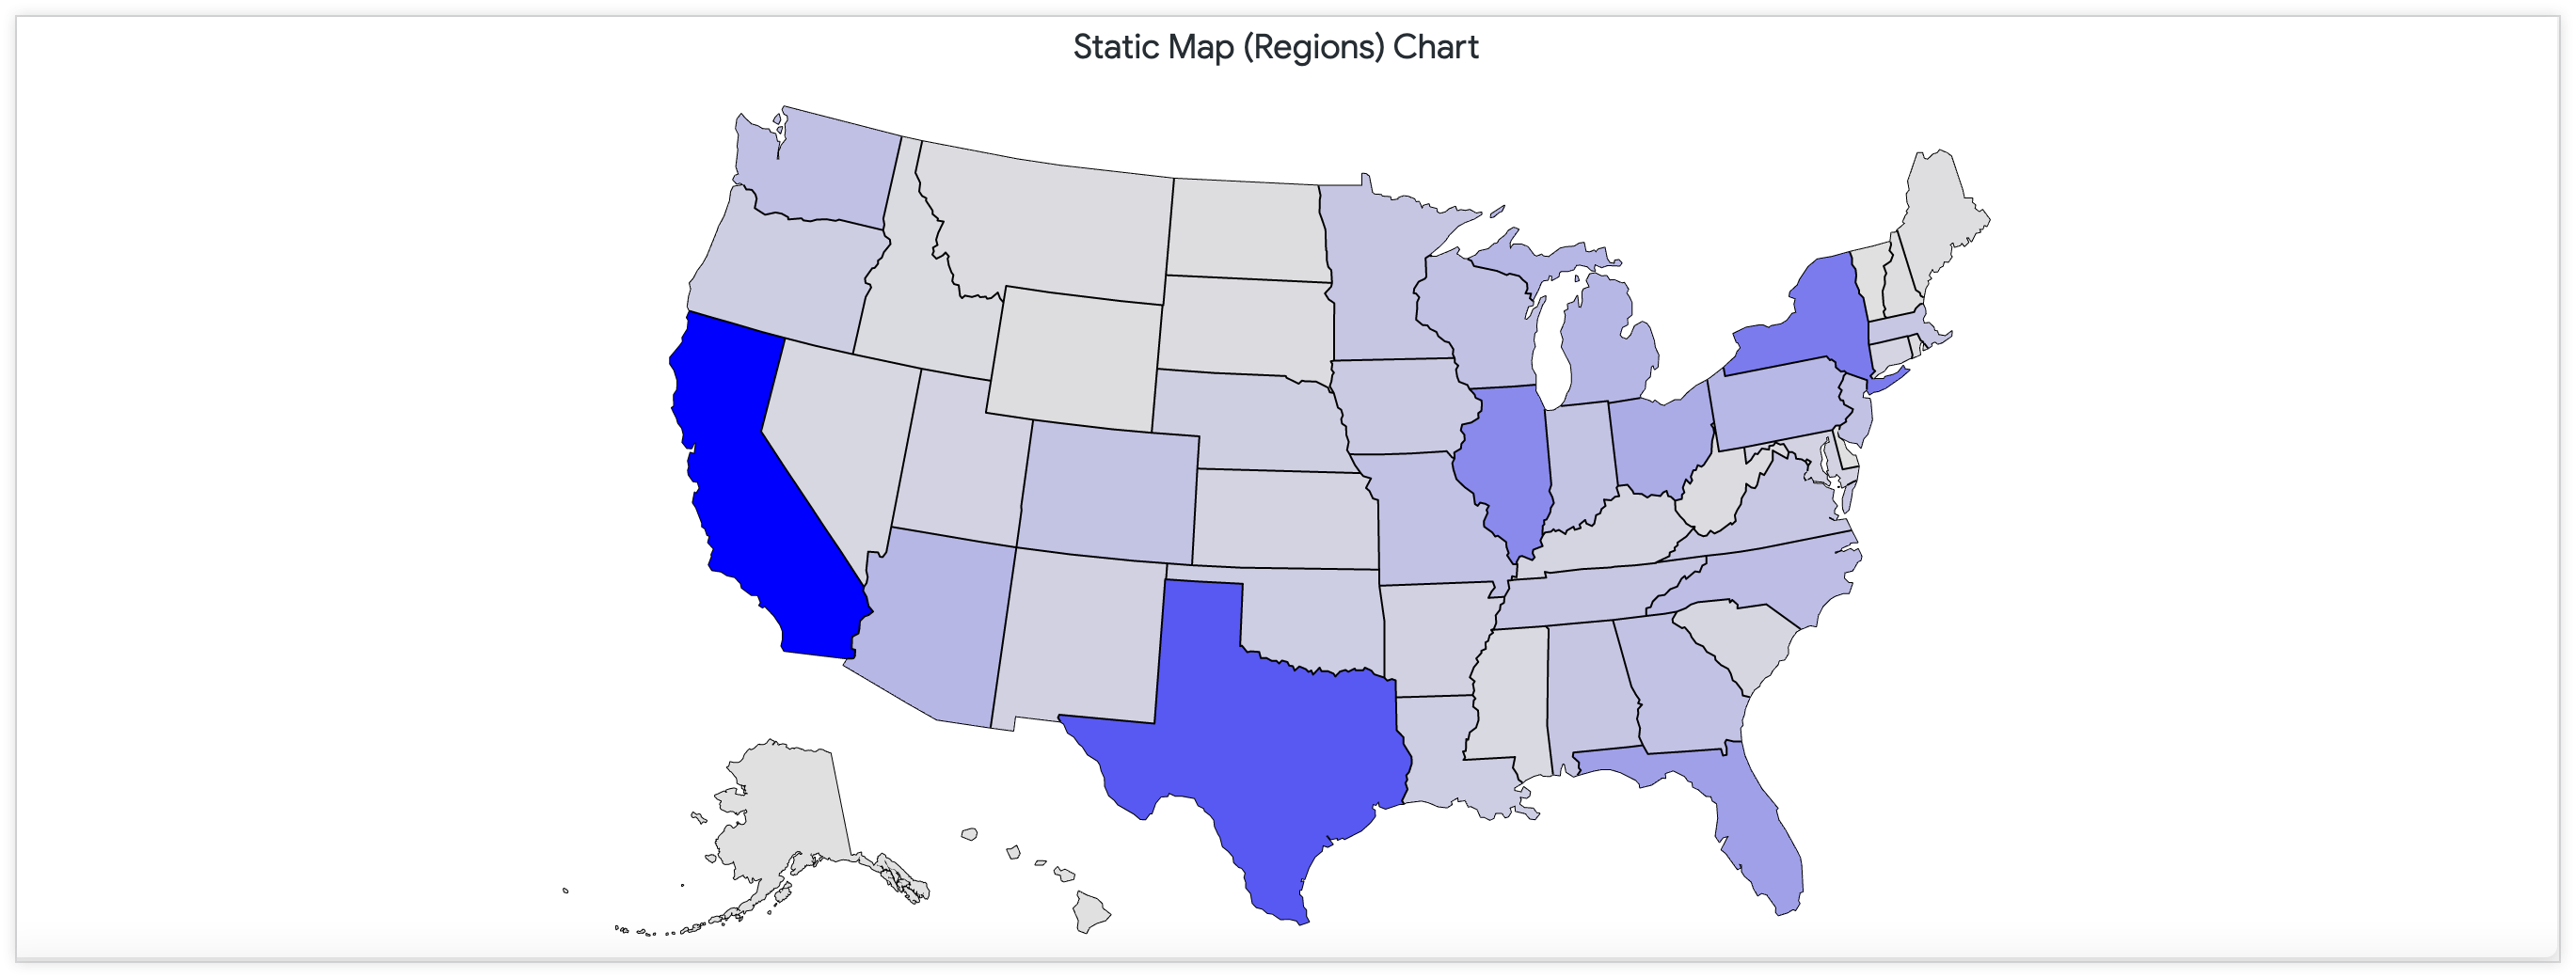 連続したカラーパレットを使用して米国内の店舗数を示す静的地図